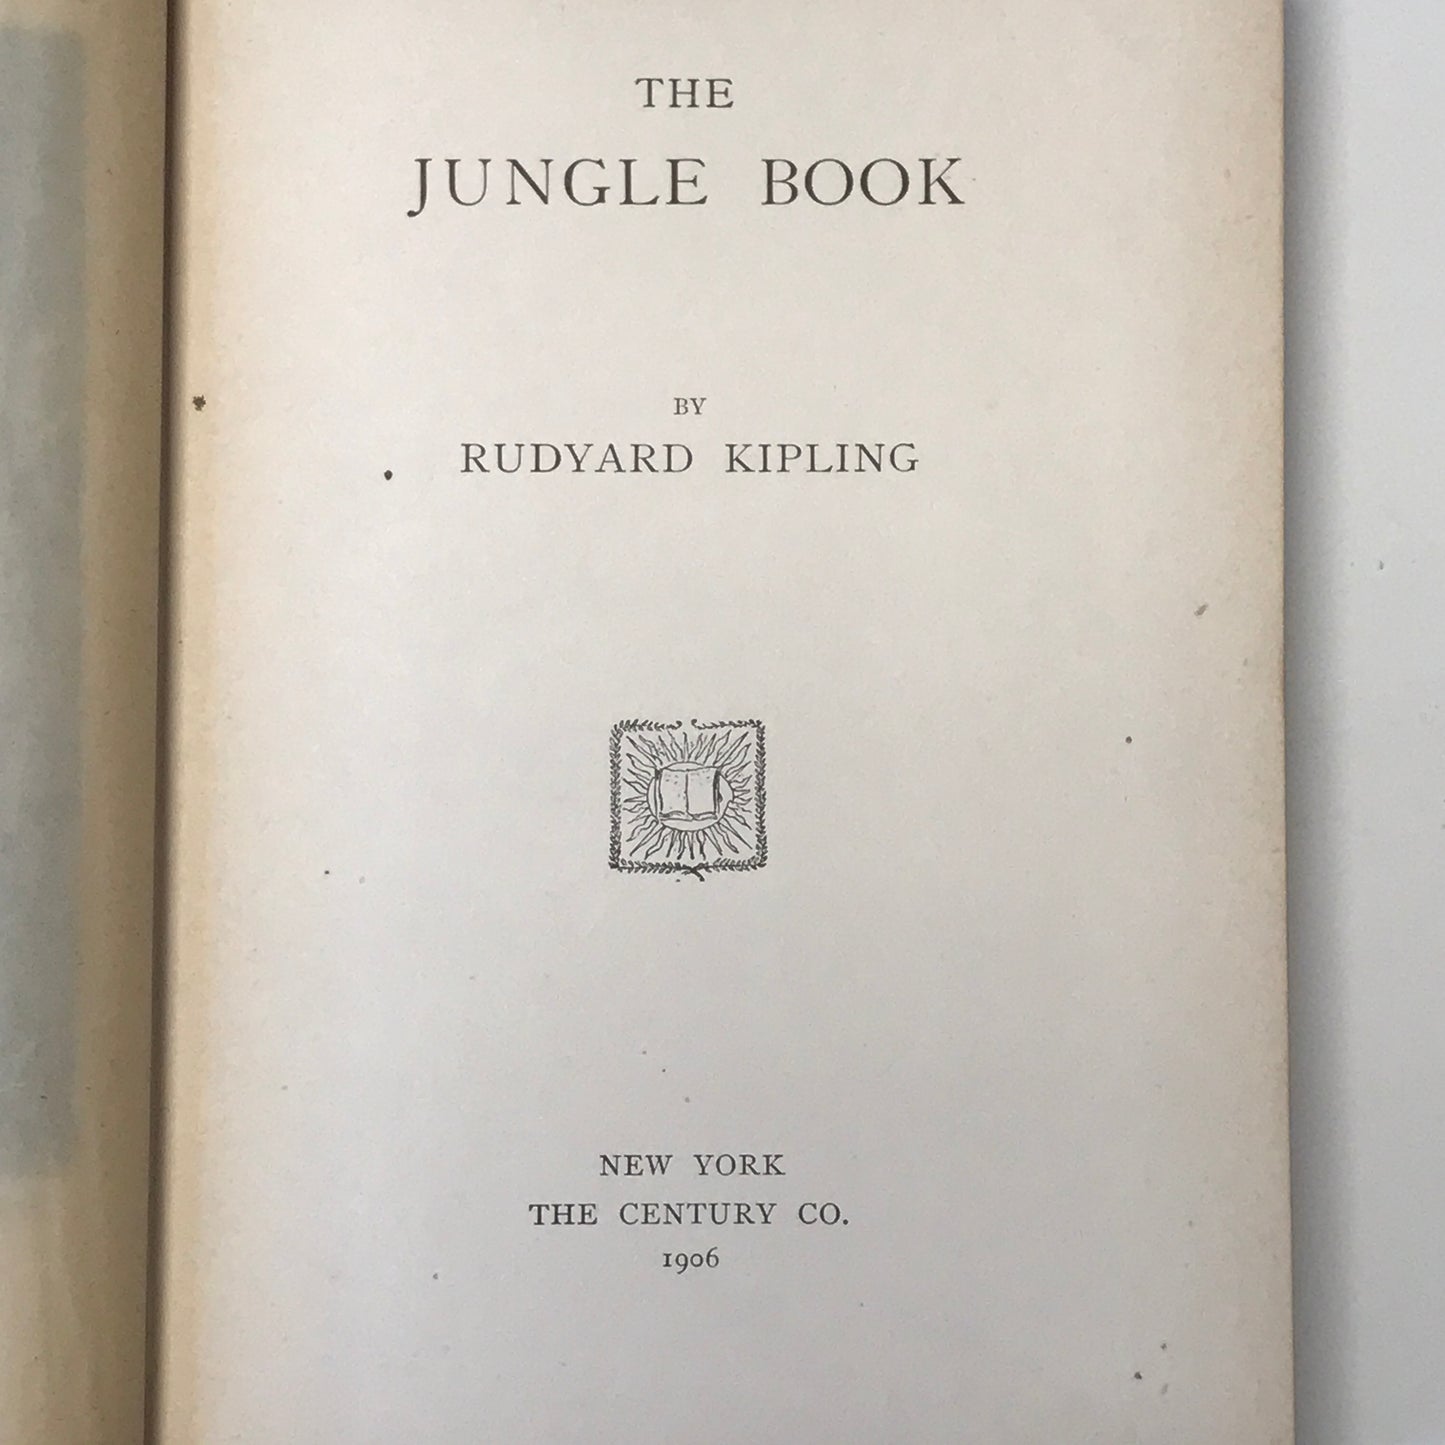 The Jungle Book - Rudyard Kipling - 1906